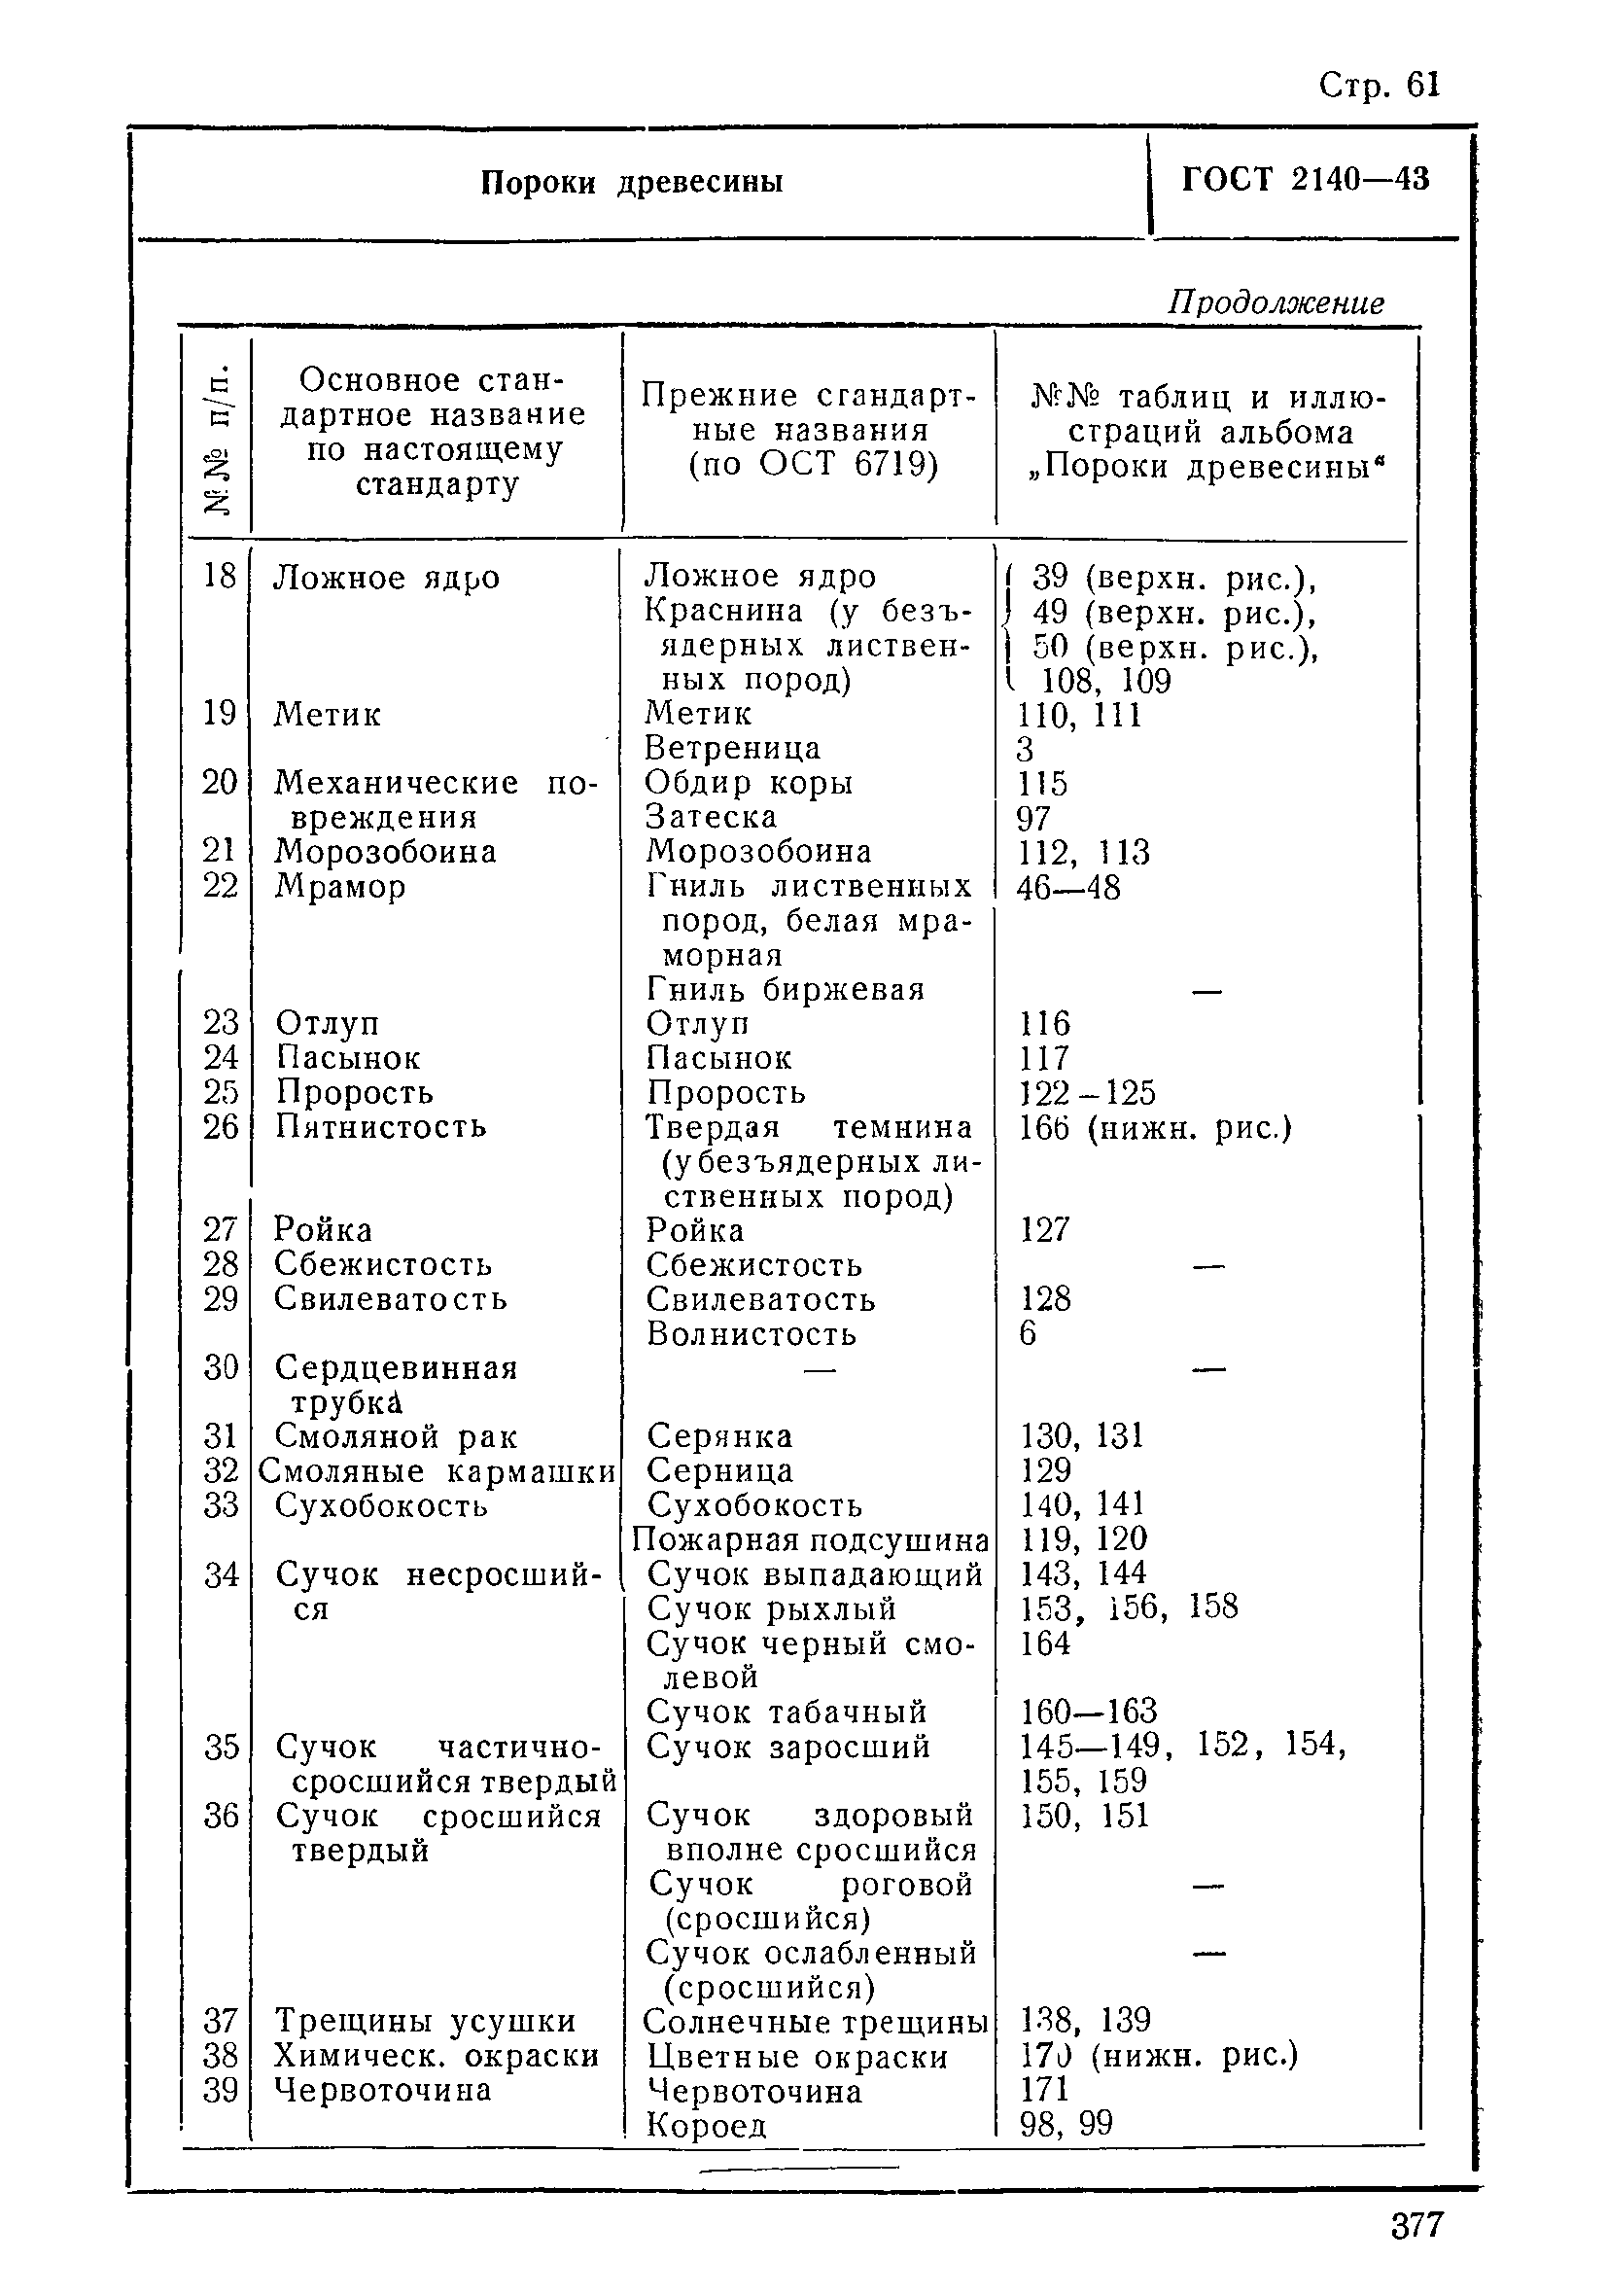 таблица пороков древесины